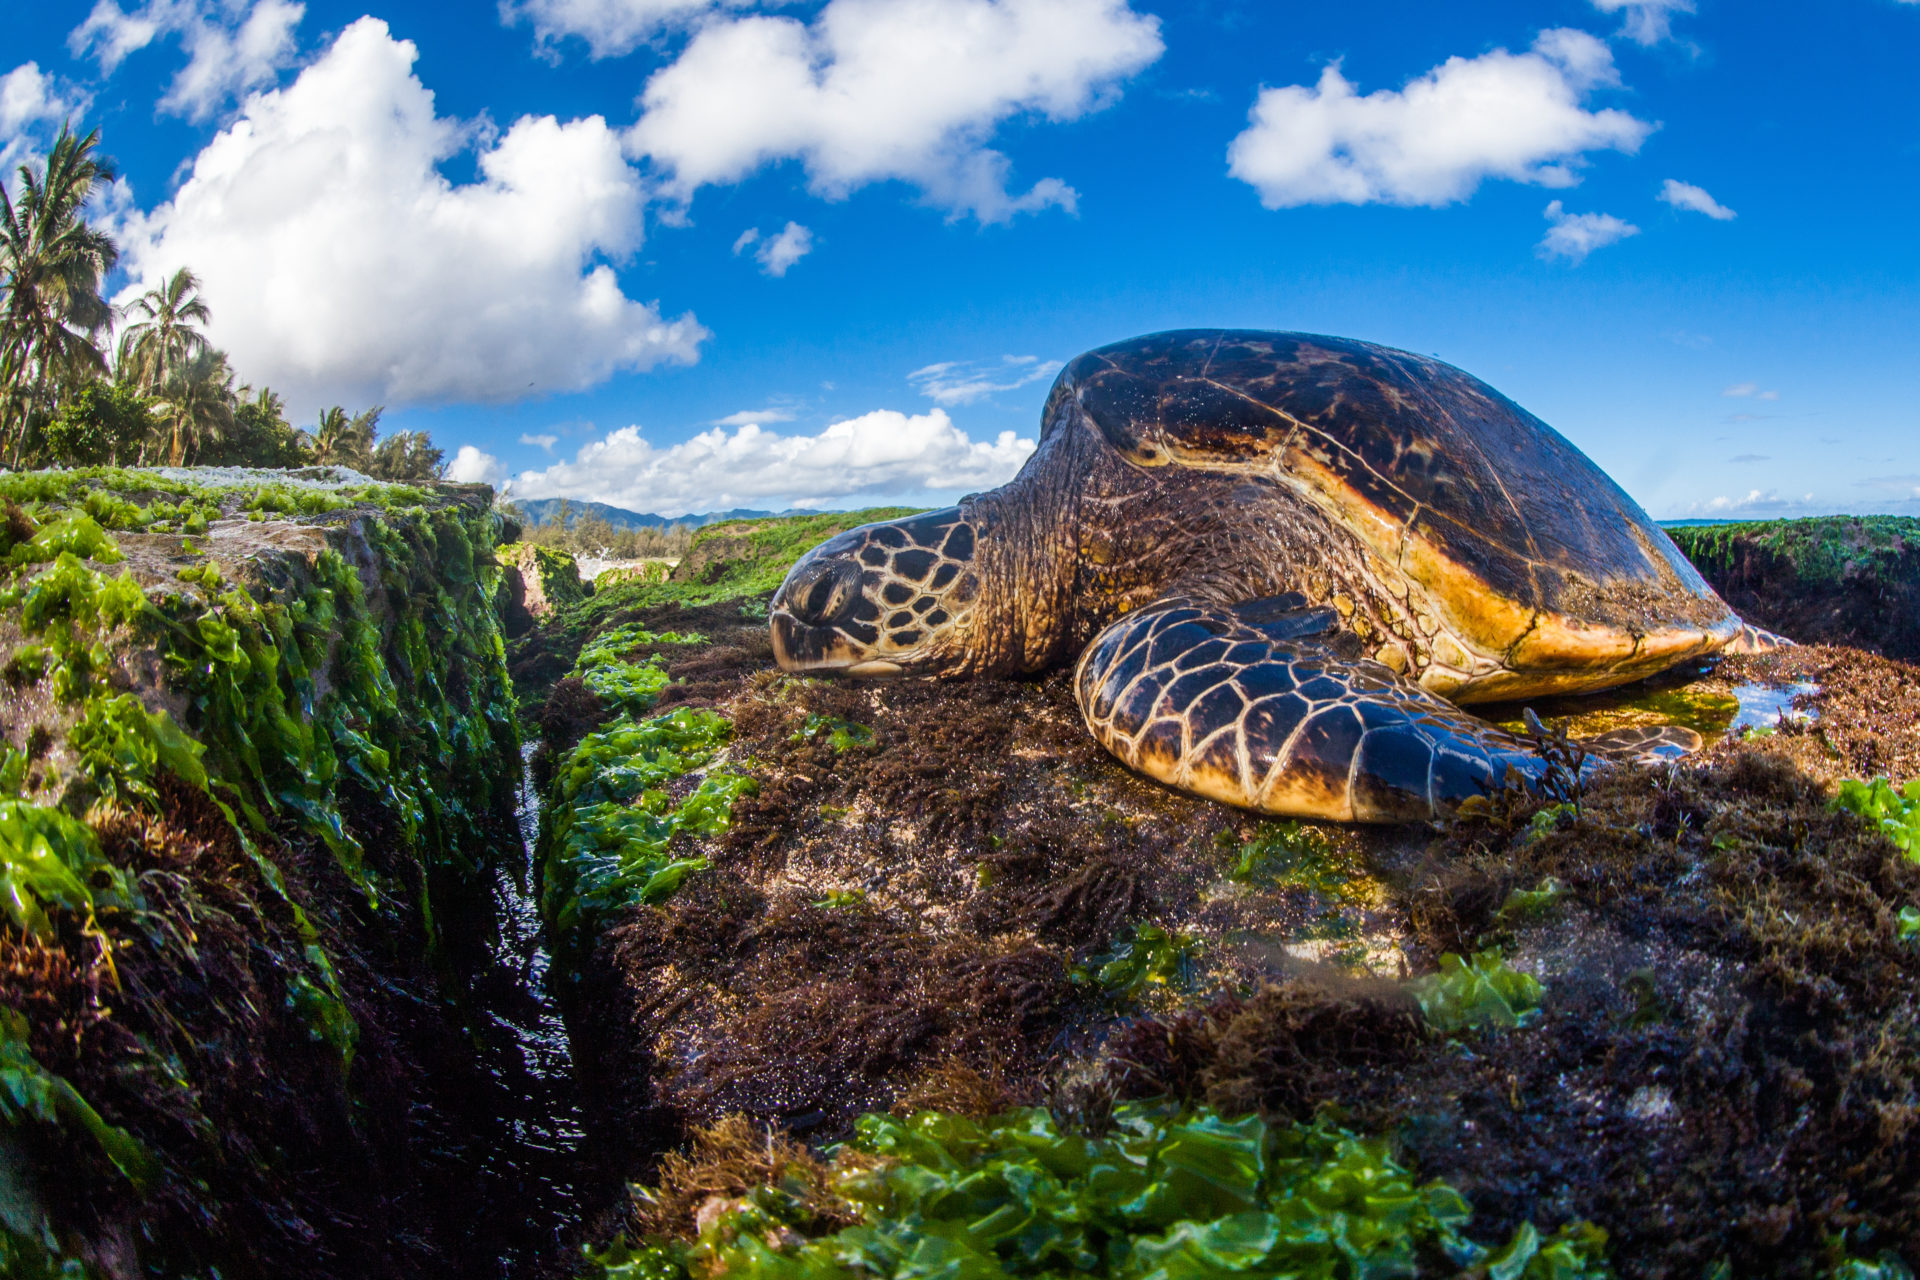 Loggerhead Turtle sea turtles